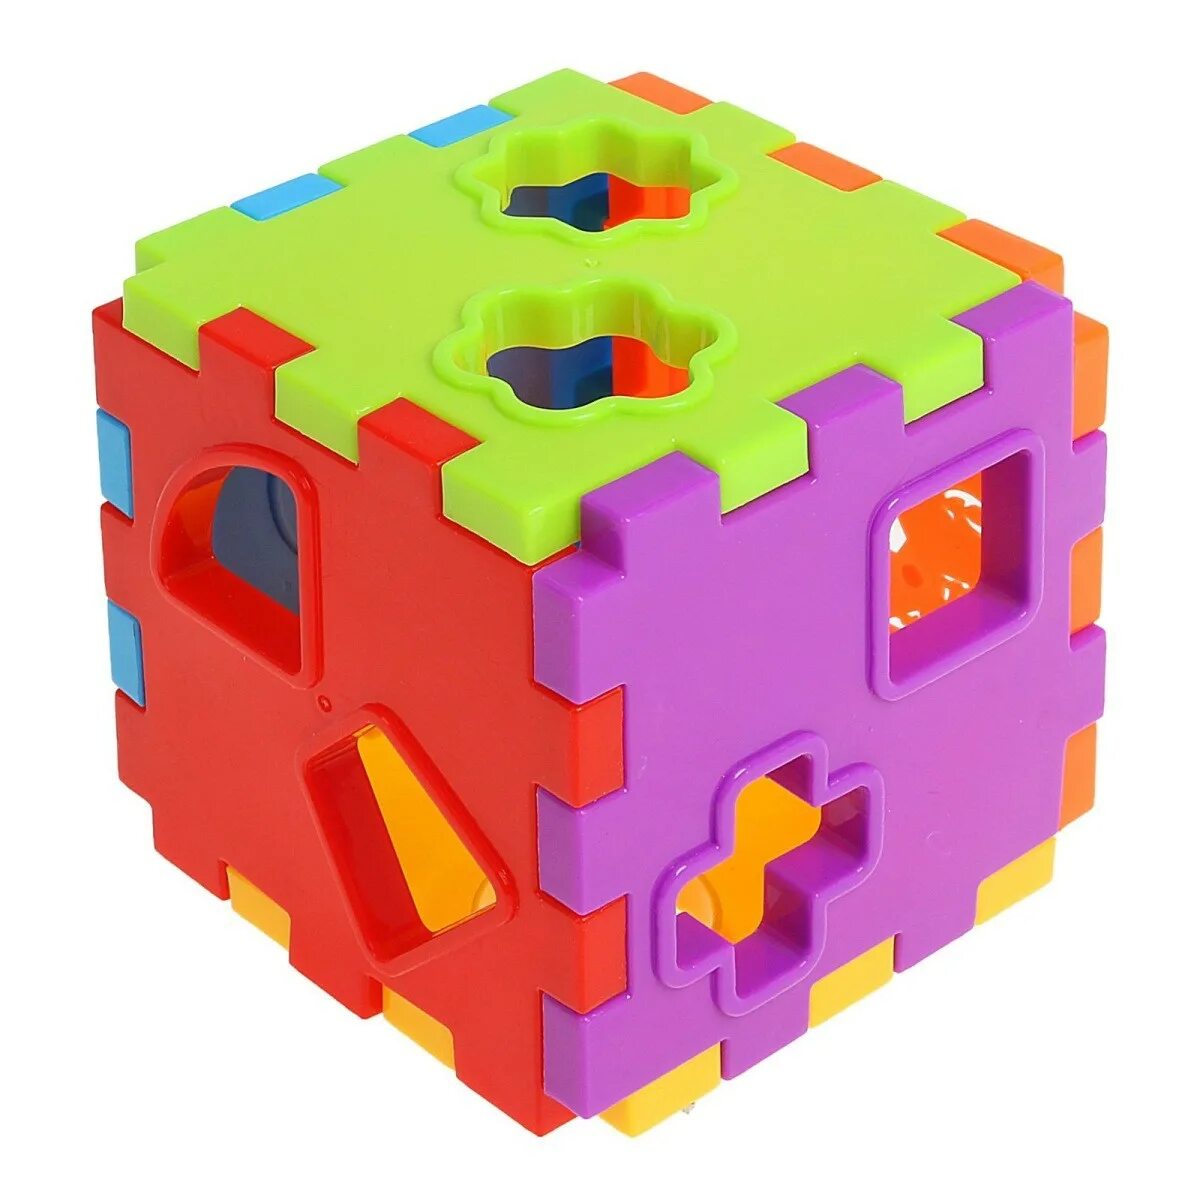 Куб сортер. Игрушка-сортер ABC куб bh2107. Сортер куб с отверстиями Монтессори. S-Mala развивающая игрушка сортер логика 13004. Логический куб для детей.